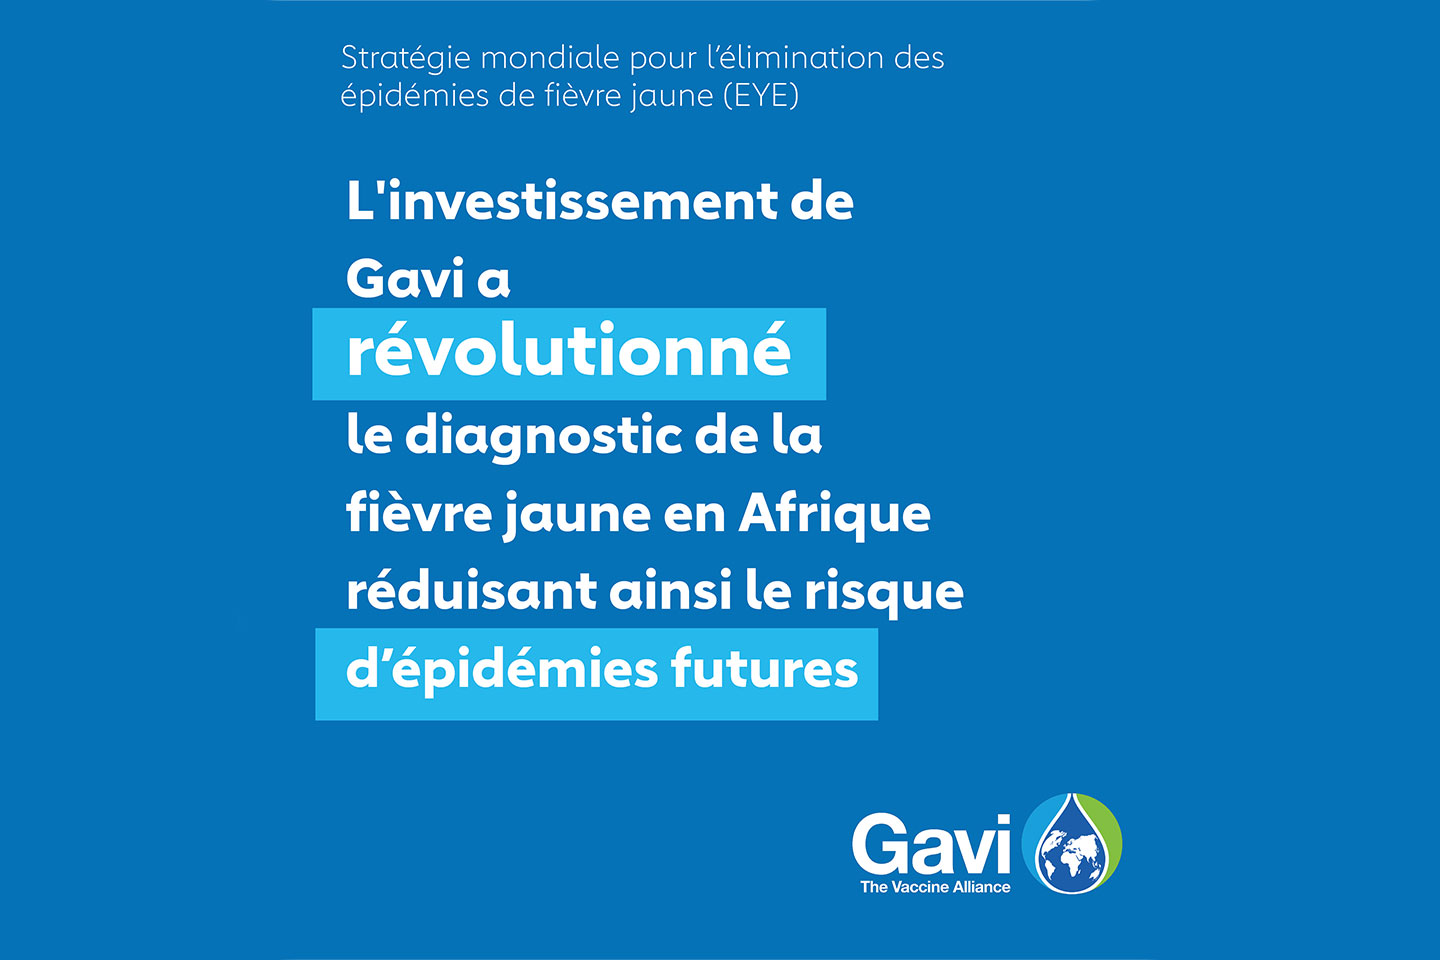 Renforcement des capacités de diagnostic de la fièvre jaune en Afrique grâce à un financement de Gavi